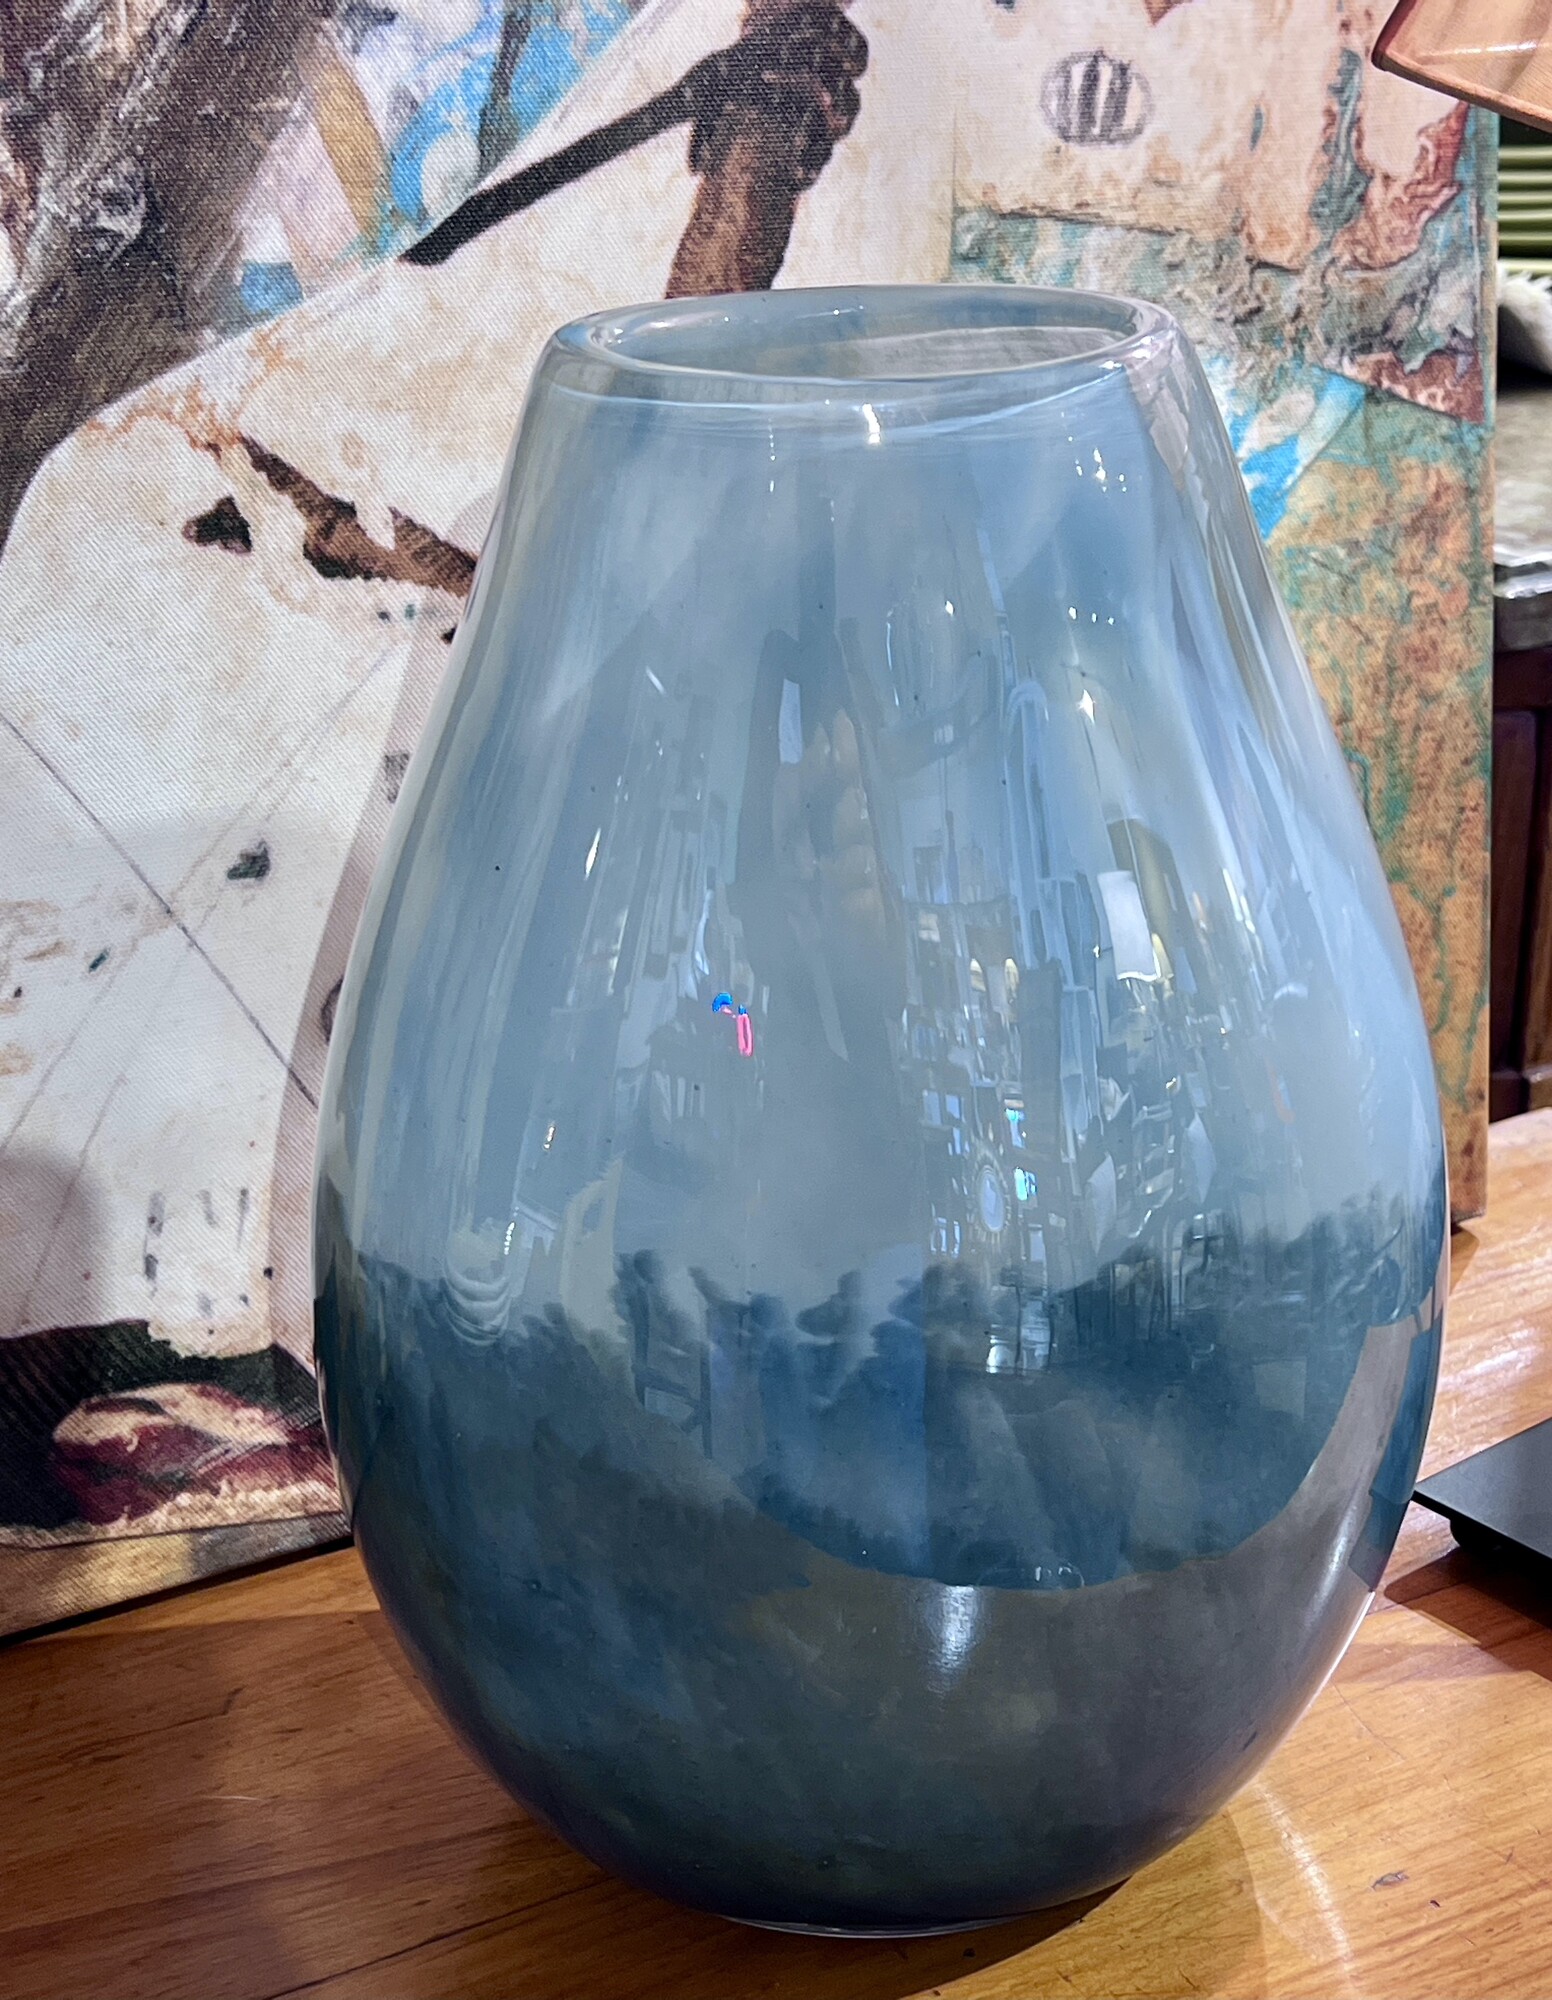 Teardrop Vase
Size: 11H